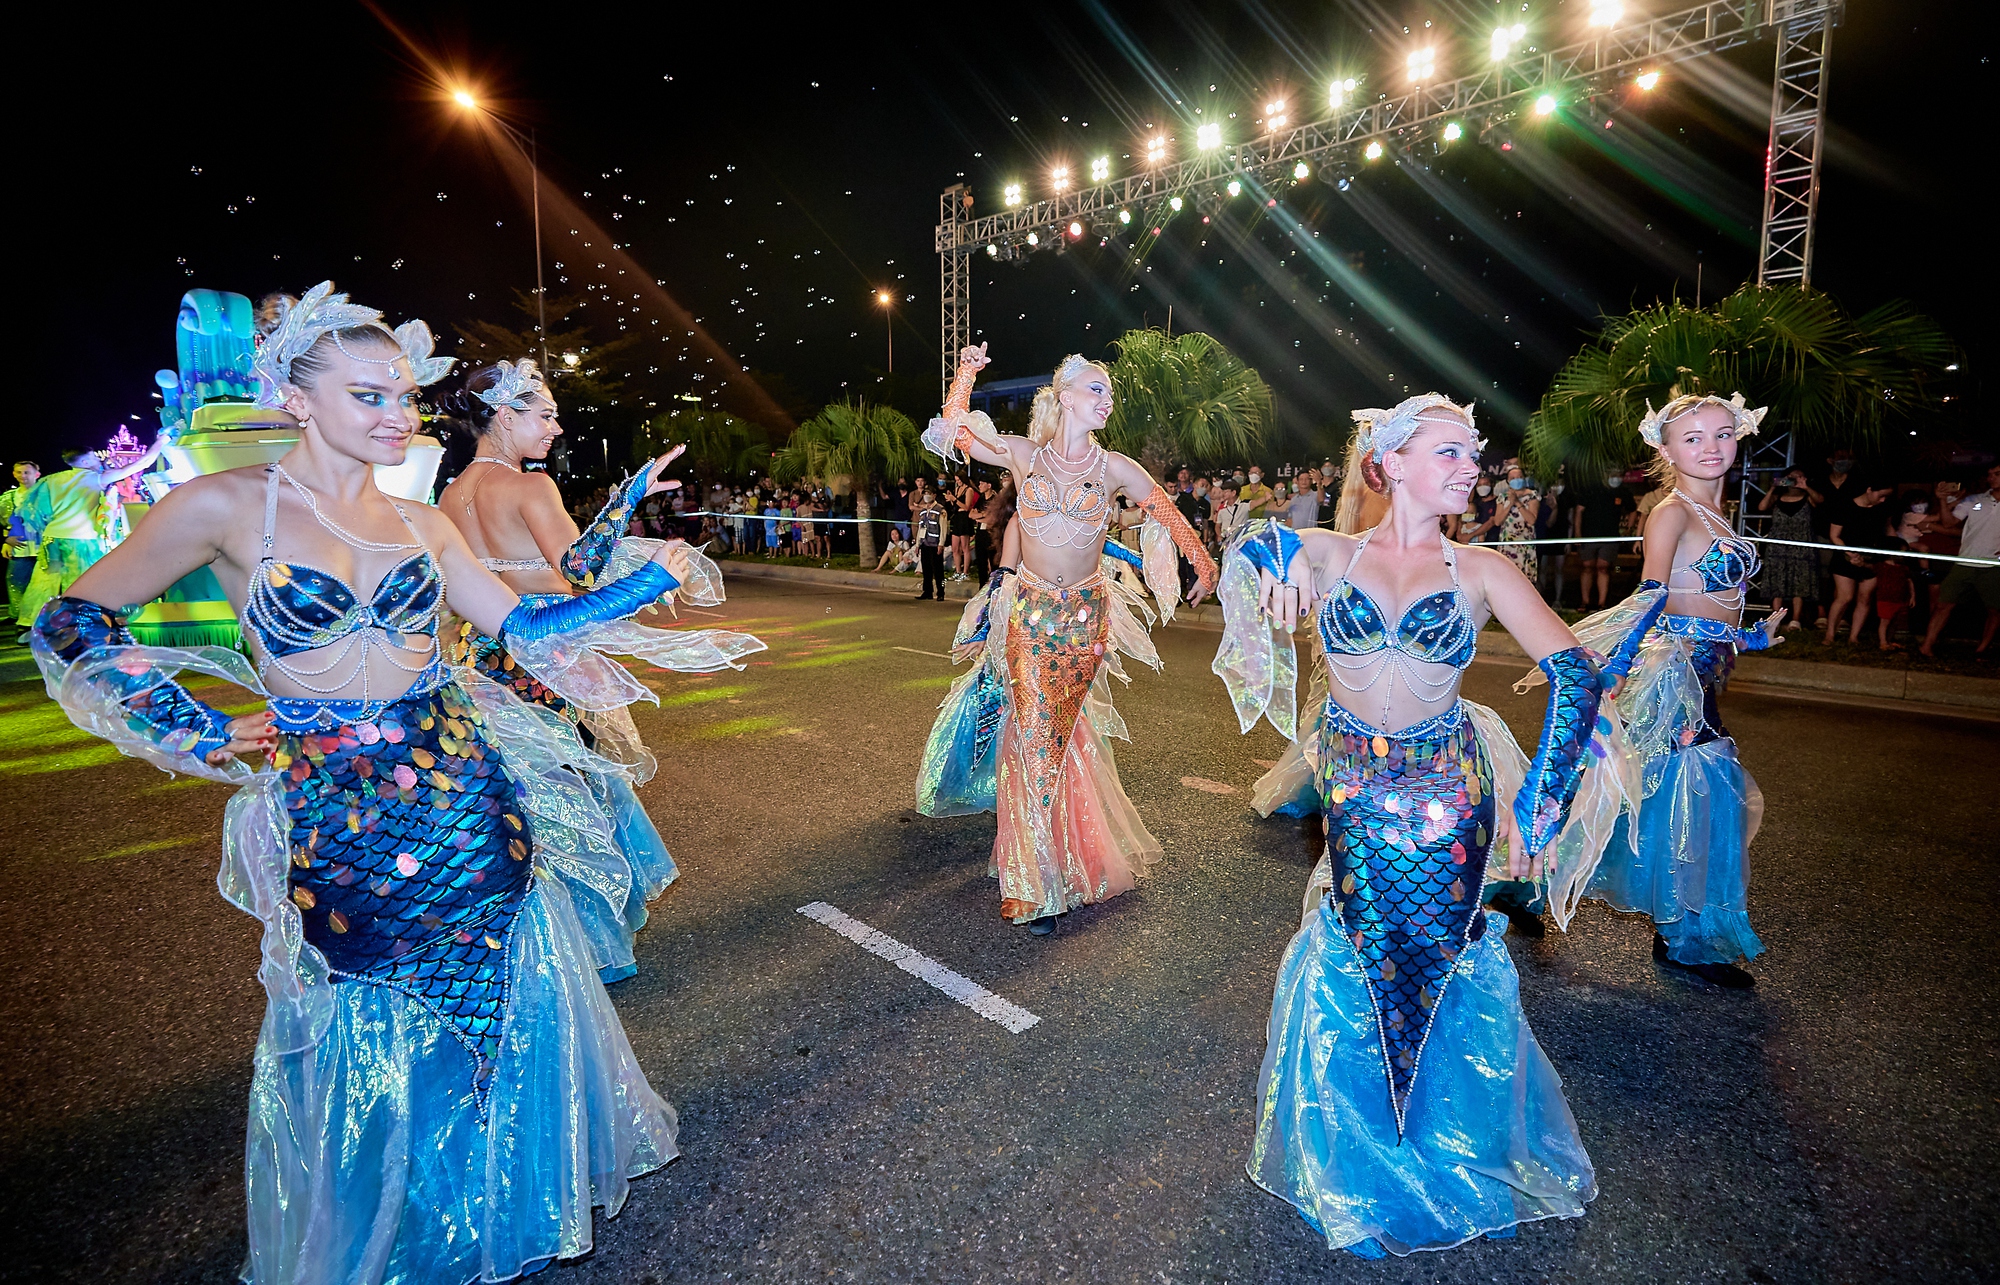 Đã mắt với vũ điệu carnival nóng bỏng dọc bờ sông Hàn - Ảnh 3.